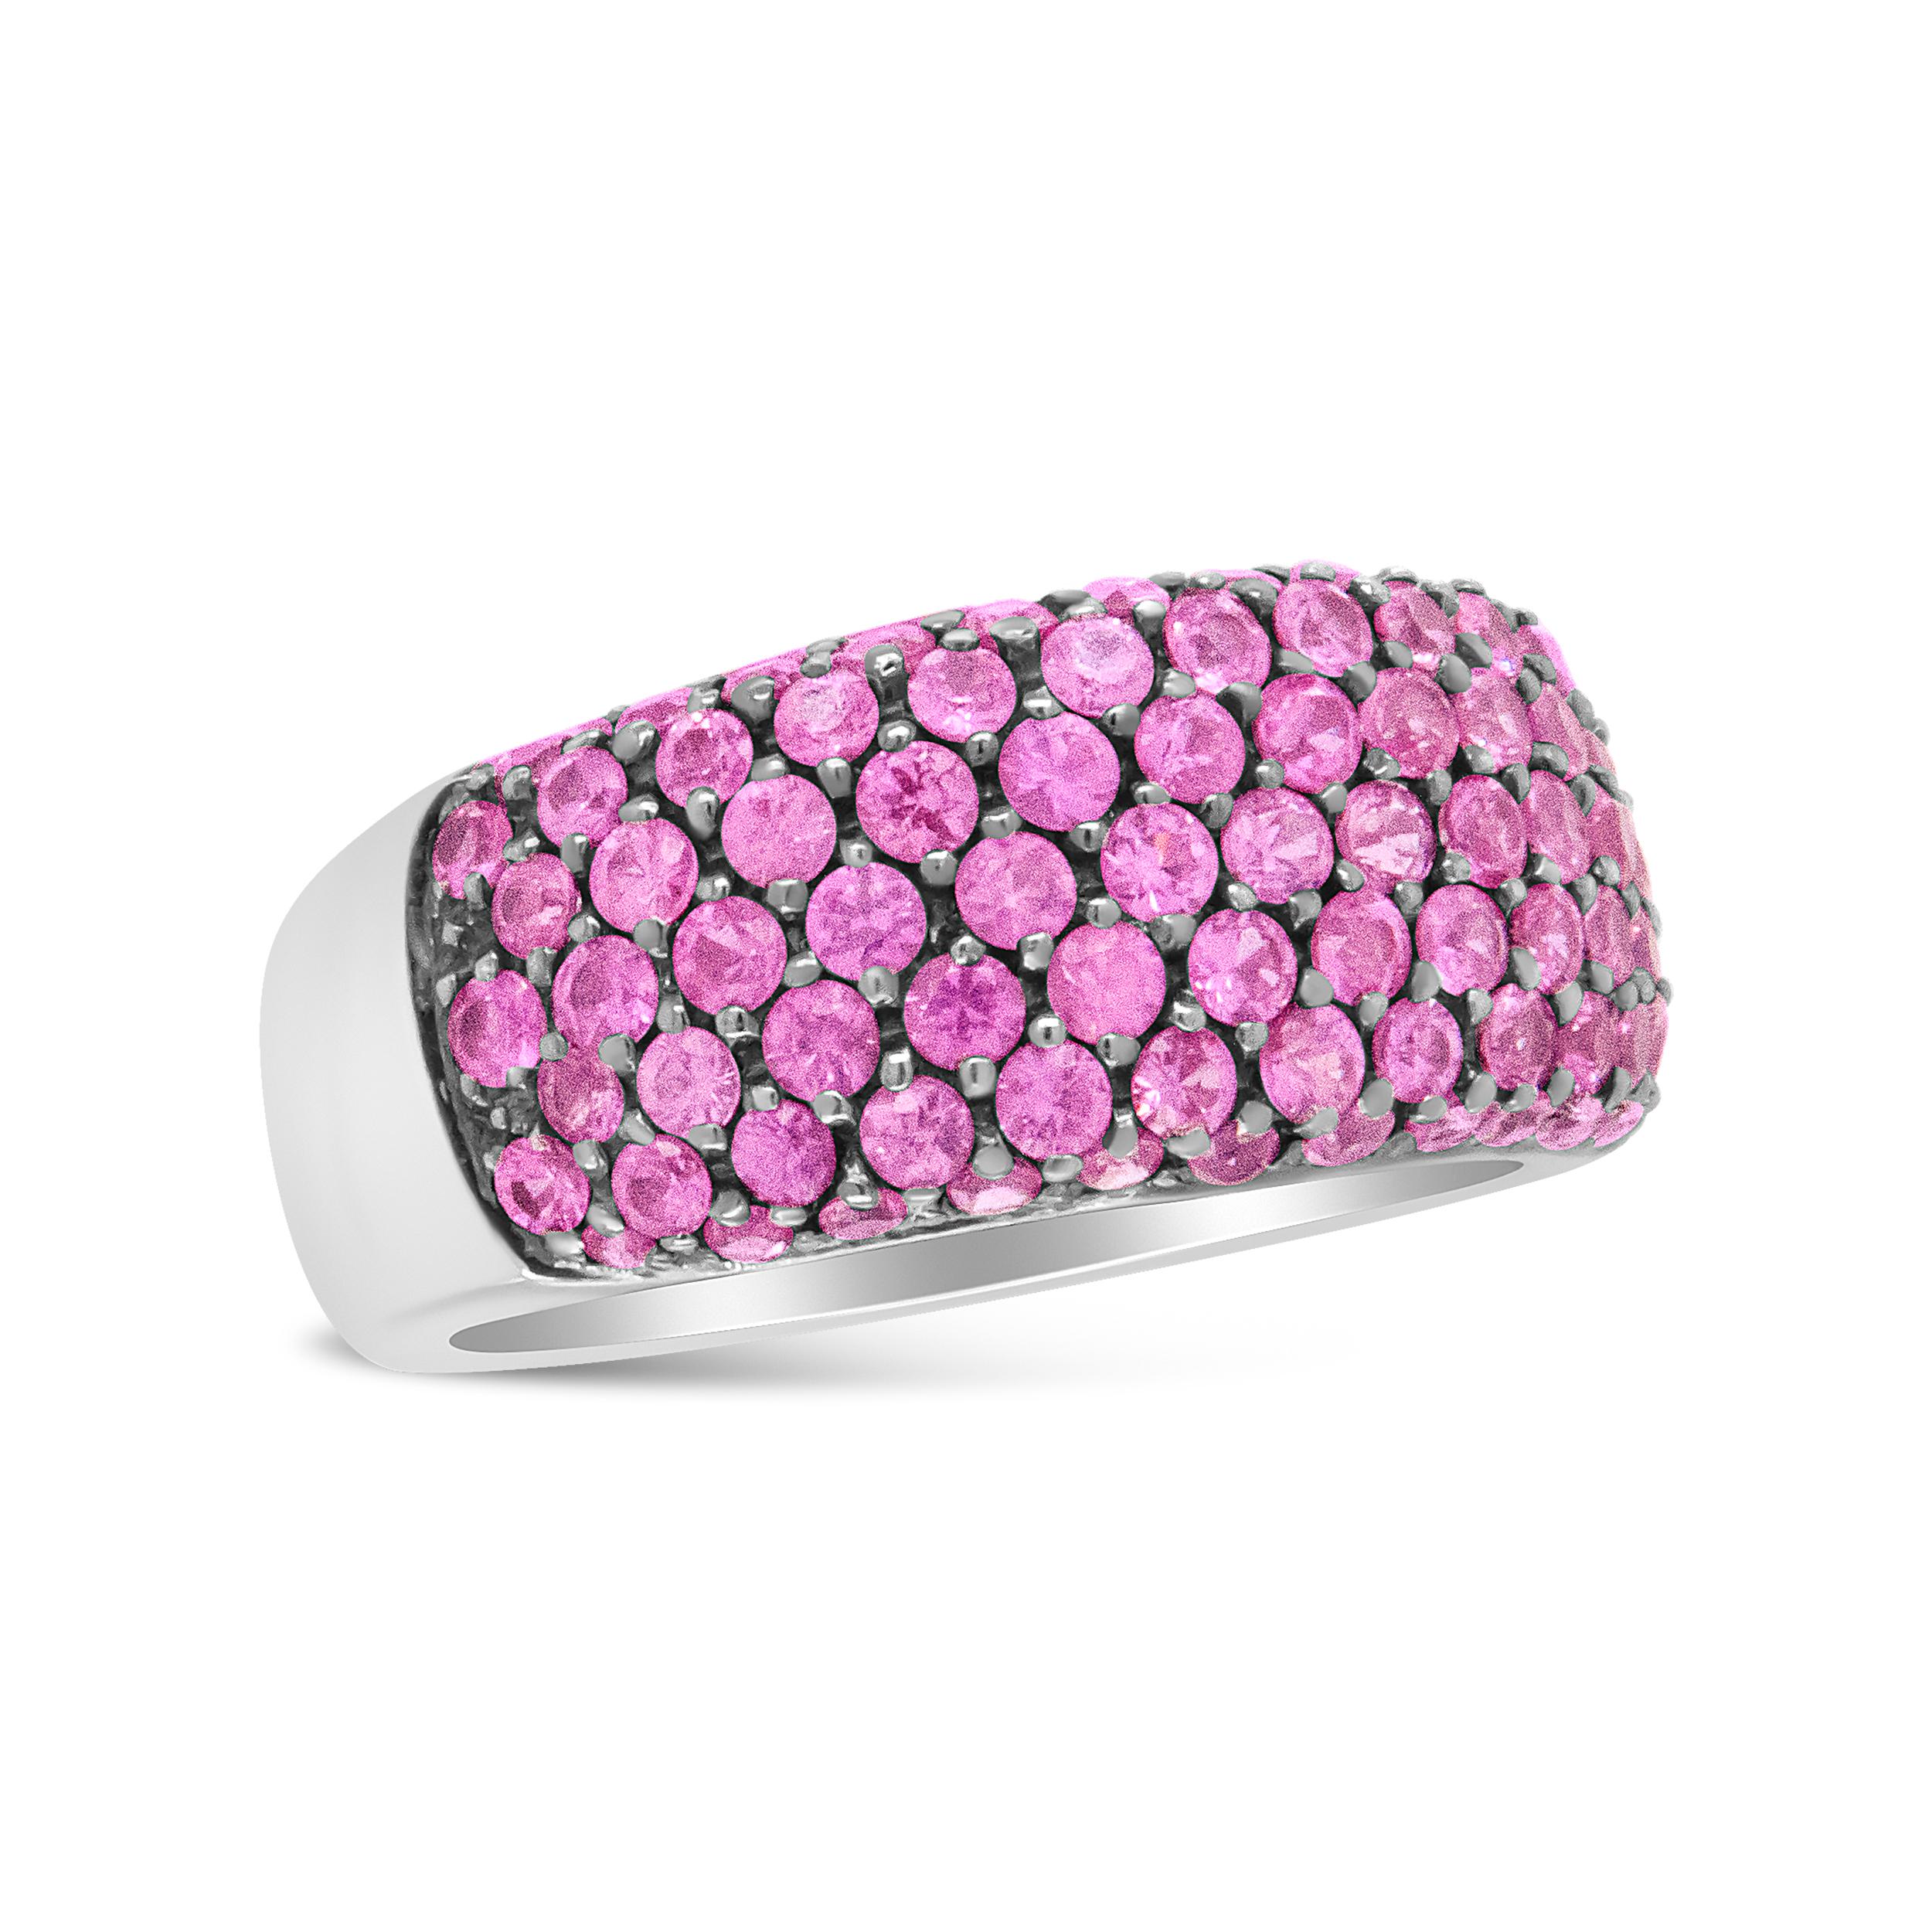 Ein einzigartiges Upgrade zu einem klassischen Diamantring ist dieser wunderschöne, mit rosa Saphiren besetzte Weißgoldring. Die Saphire heben sich markant von dem luxuriösen Band aus 18 Karat Weißgold ab, in das die Steine mit einem Perlenmuster